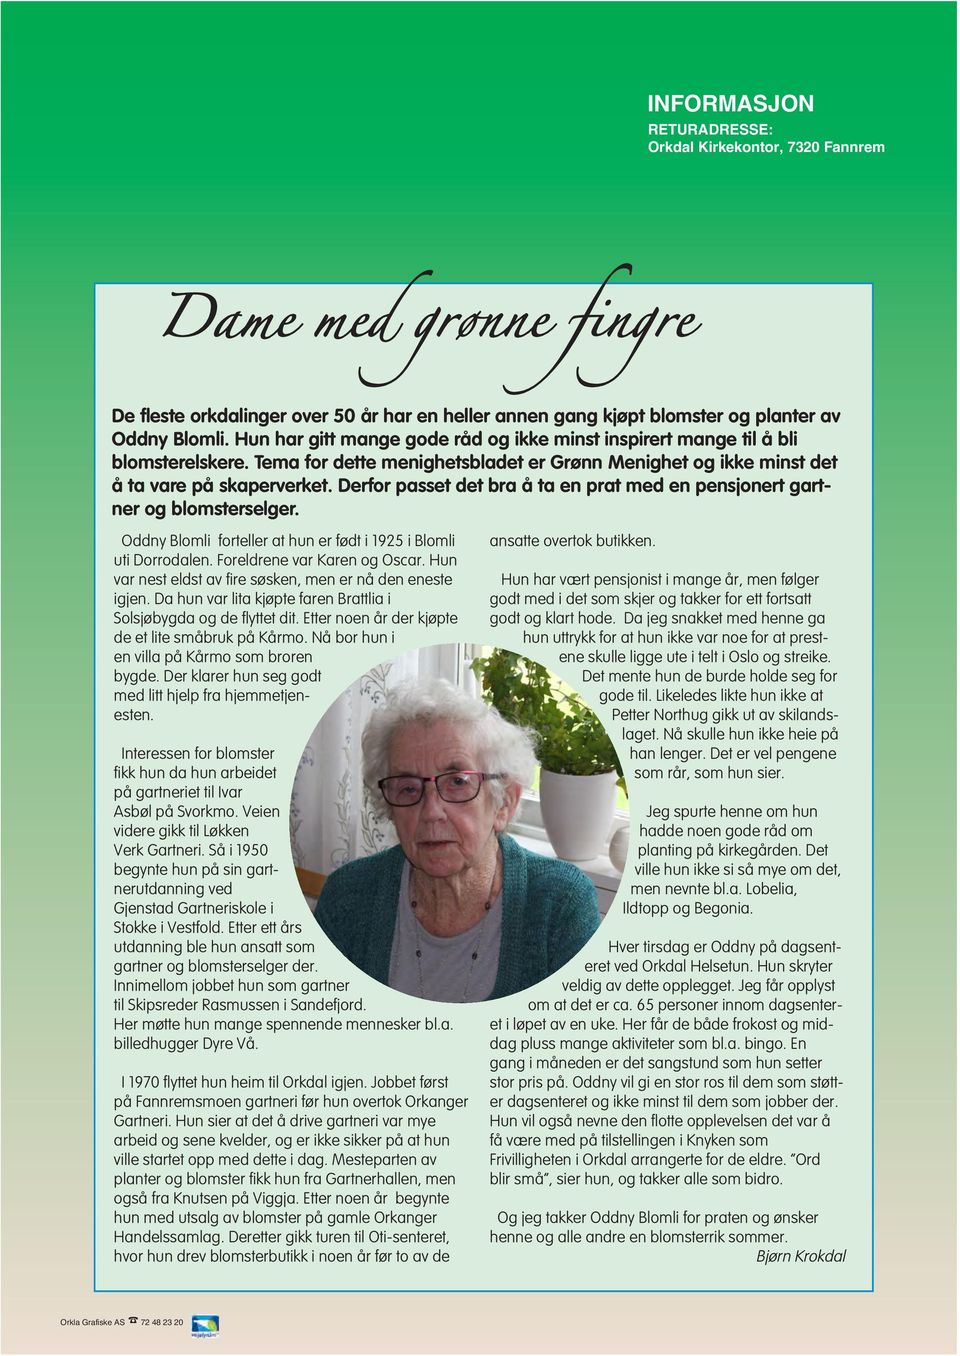 Derfor passet det bra å ta en prat med en pensjonert gartner og blomsterselger. Oddny Blomli forteller at hun er født i 1925 i Blomli uti Dorrodalen. Foreldrene var Karen og Oscar.